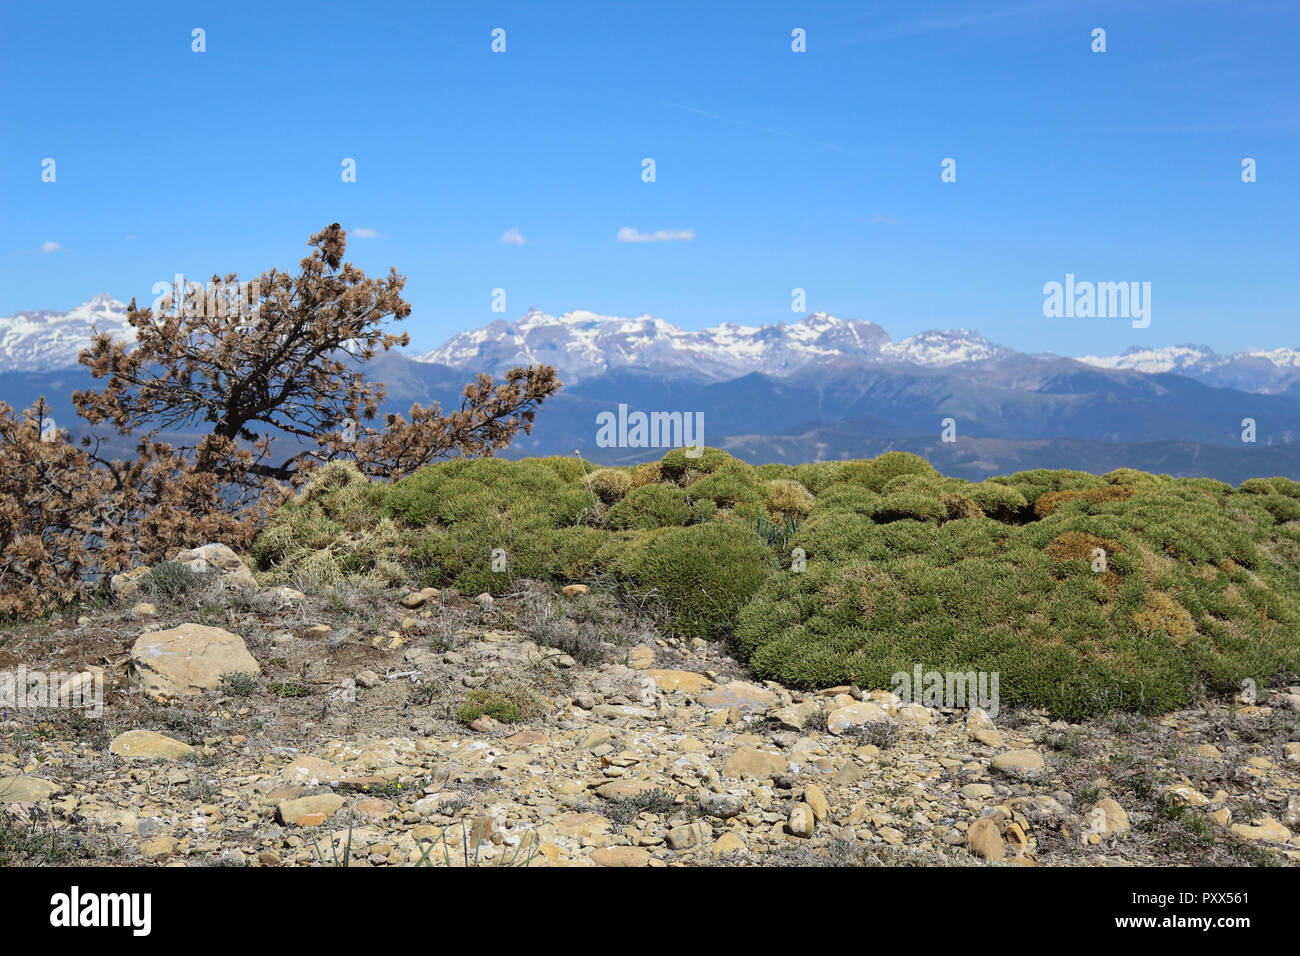 Eine verbogene trockene Tanne neben einigen Büschen und steinigen Boden mit, als Hintergrund, schneebedeckte Berge und ein blauer Himmel in Peña Oroel Berg, Aragon, Spanien Stockfoto